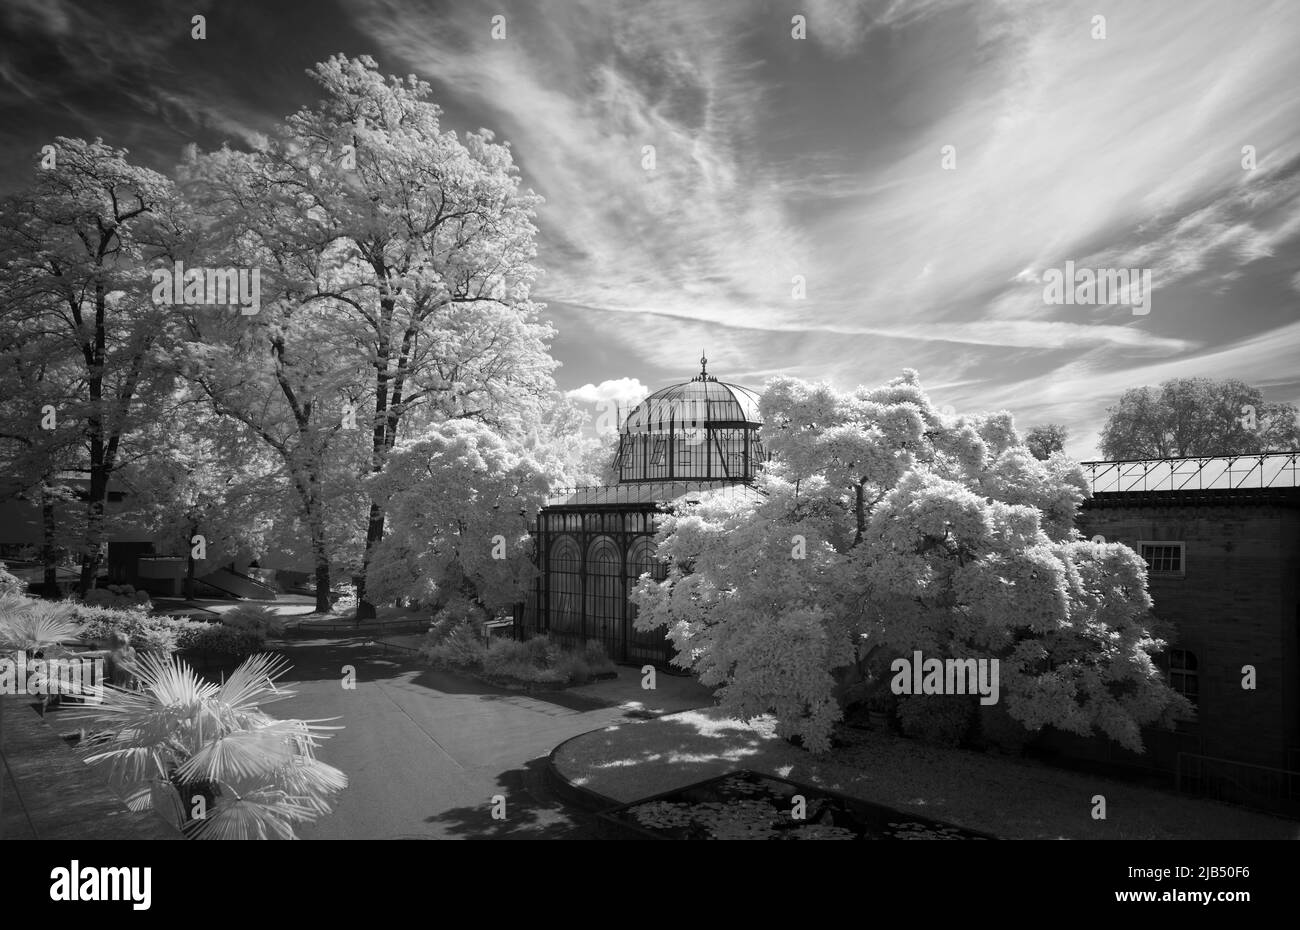 Serra nella casa di campagna moresca, immagine infrarossa, Wiilhelma, giardino zoologico-botanico, Stoccarda, Baden-Wuerttemberg, Germania Foto Stock